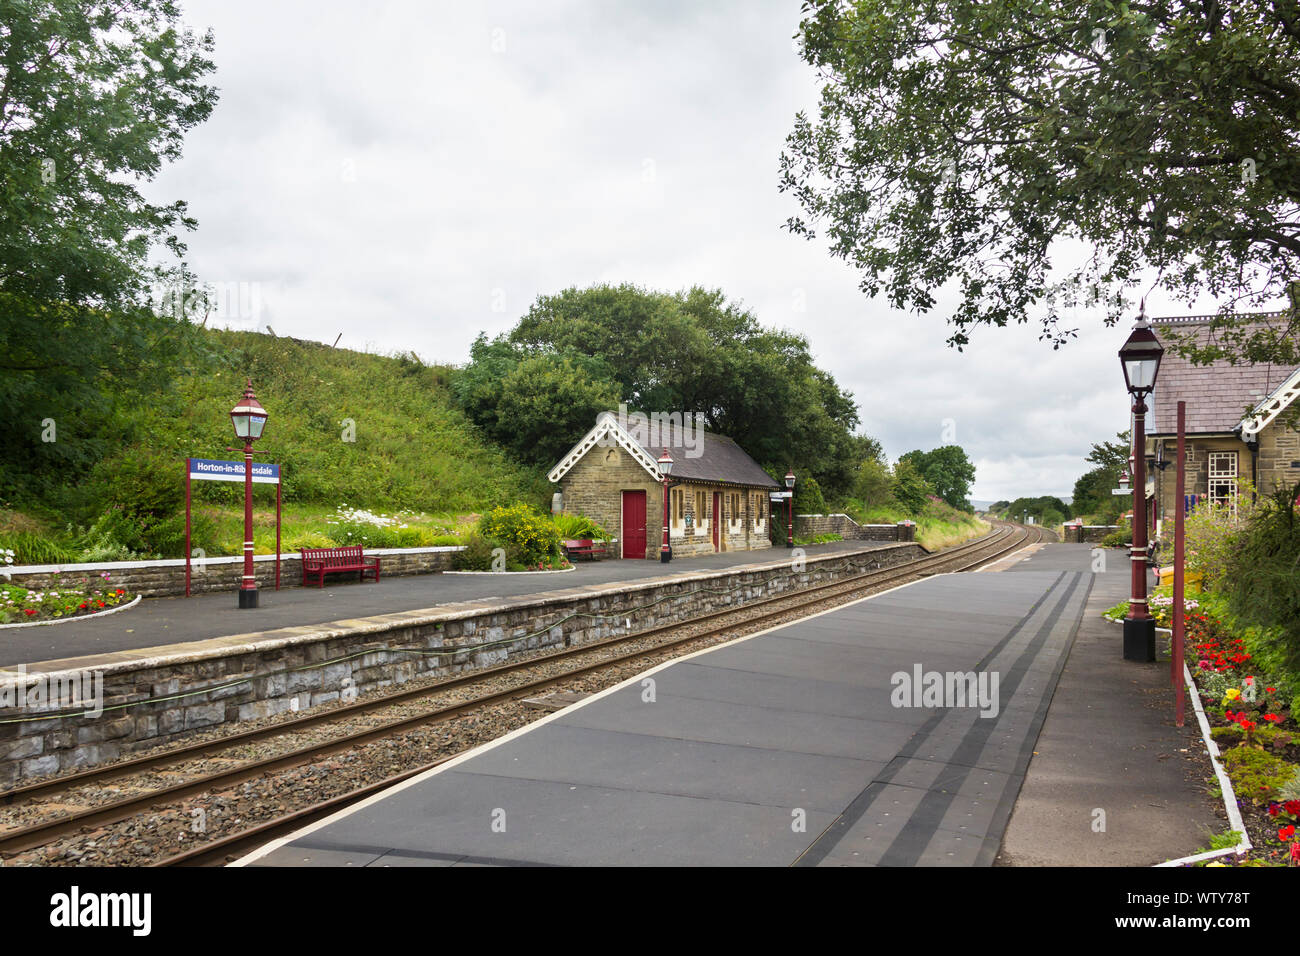 La estación de tren Horton en Ribblesdale, North Yorkshire en un aburrido, día nublado, mirando en dirección norte. Foto de stock